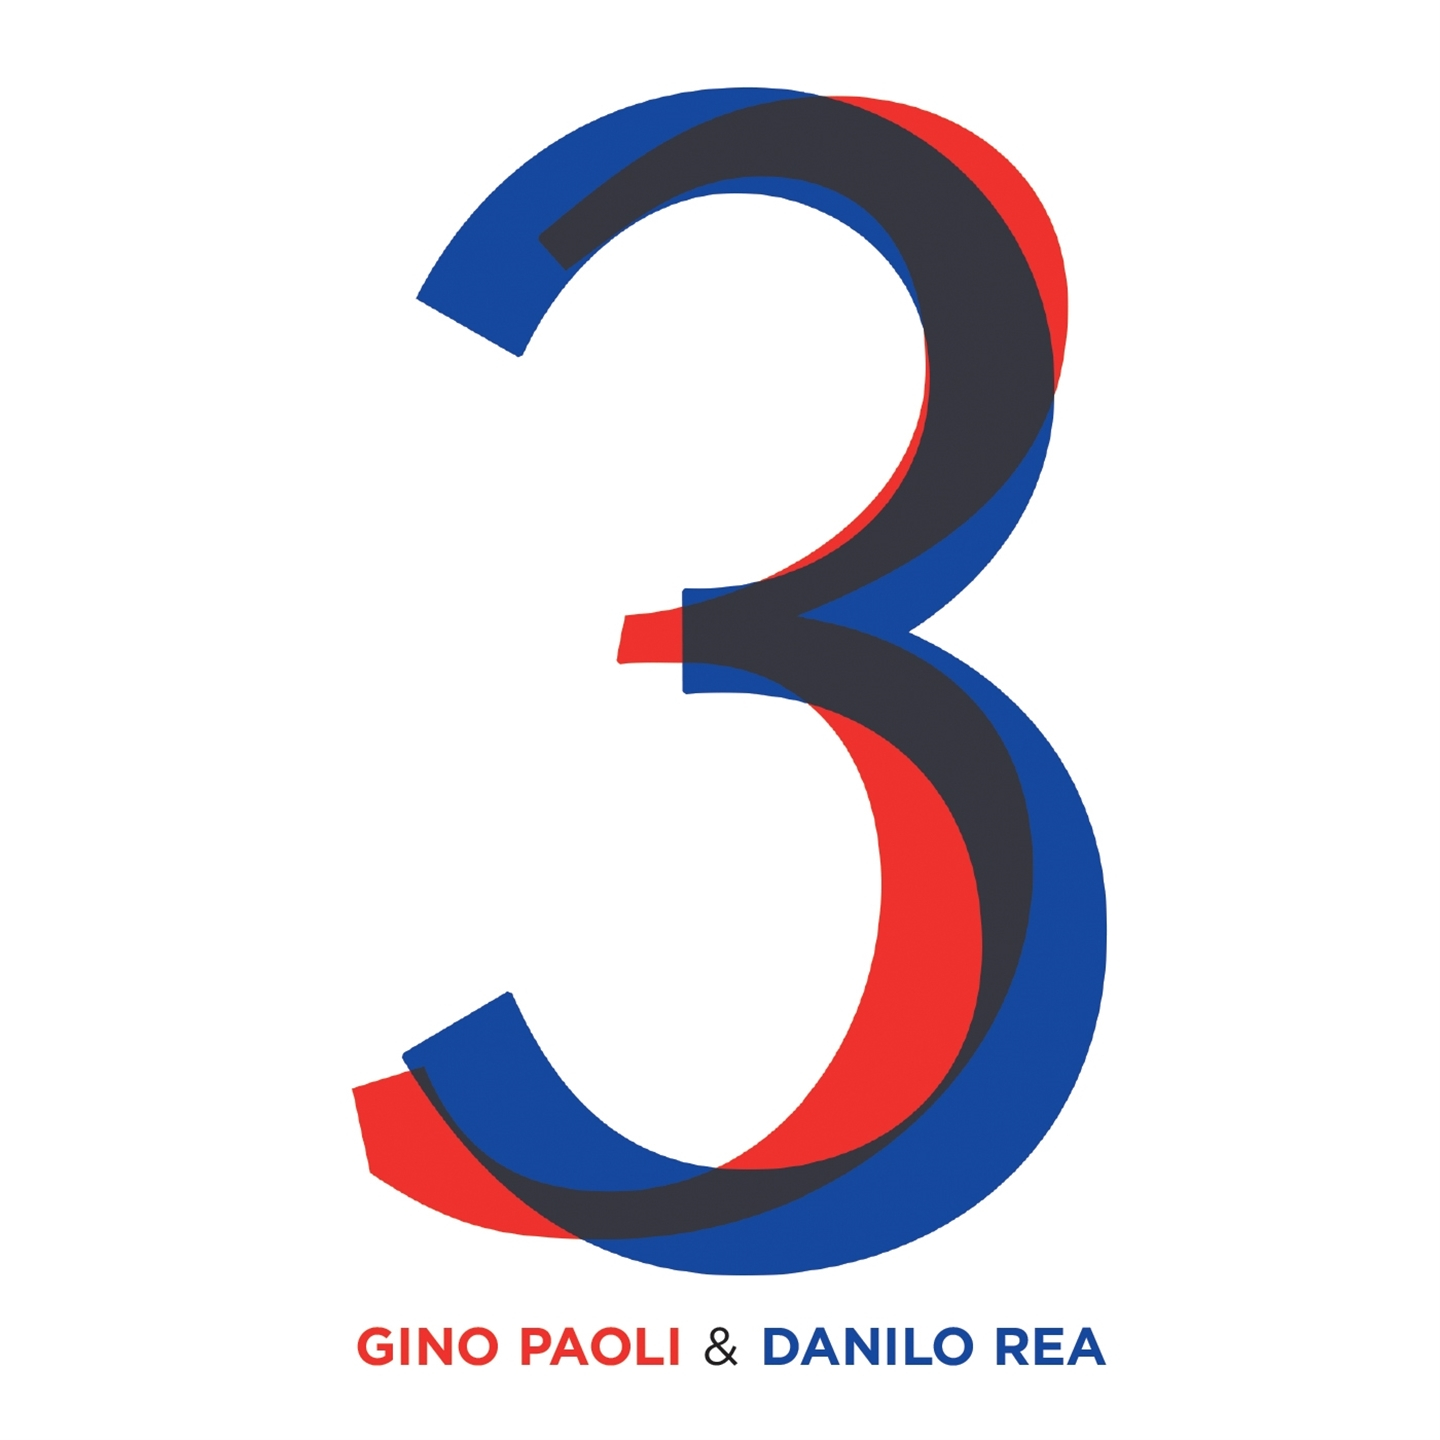 Gino Paoli, Danilo Rea - 3 - Bild 1 von 1